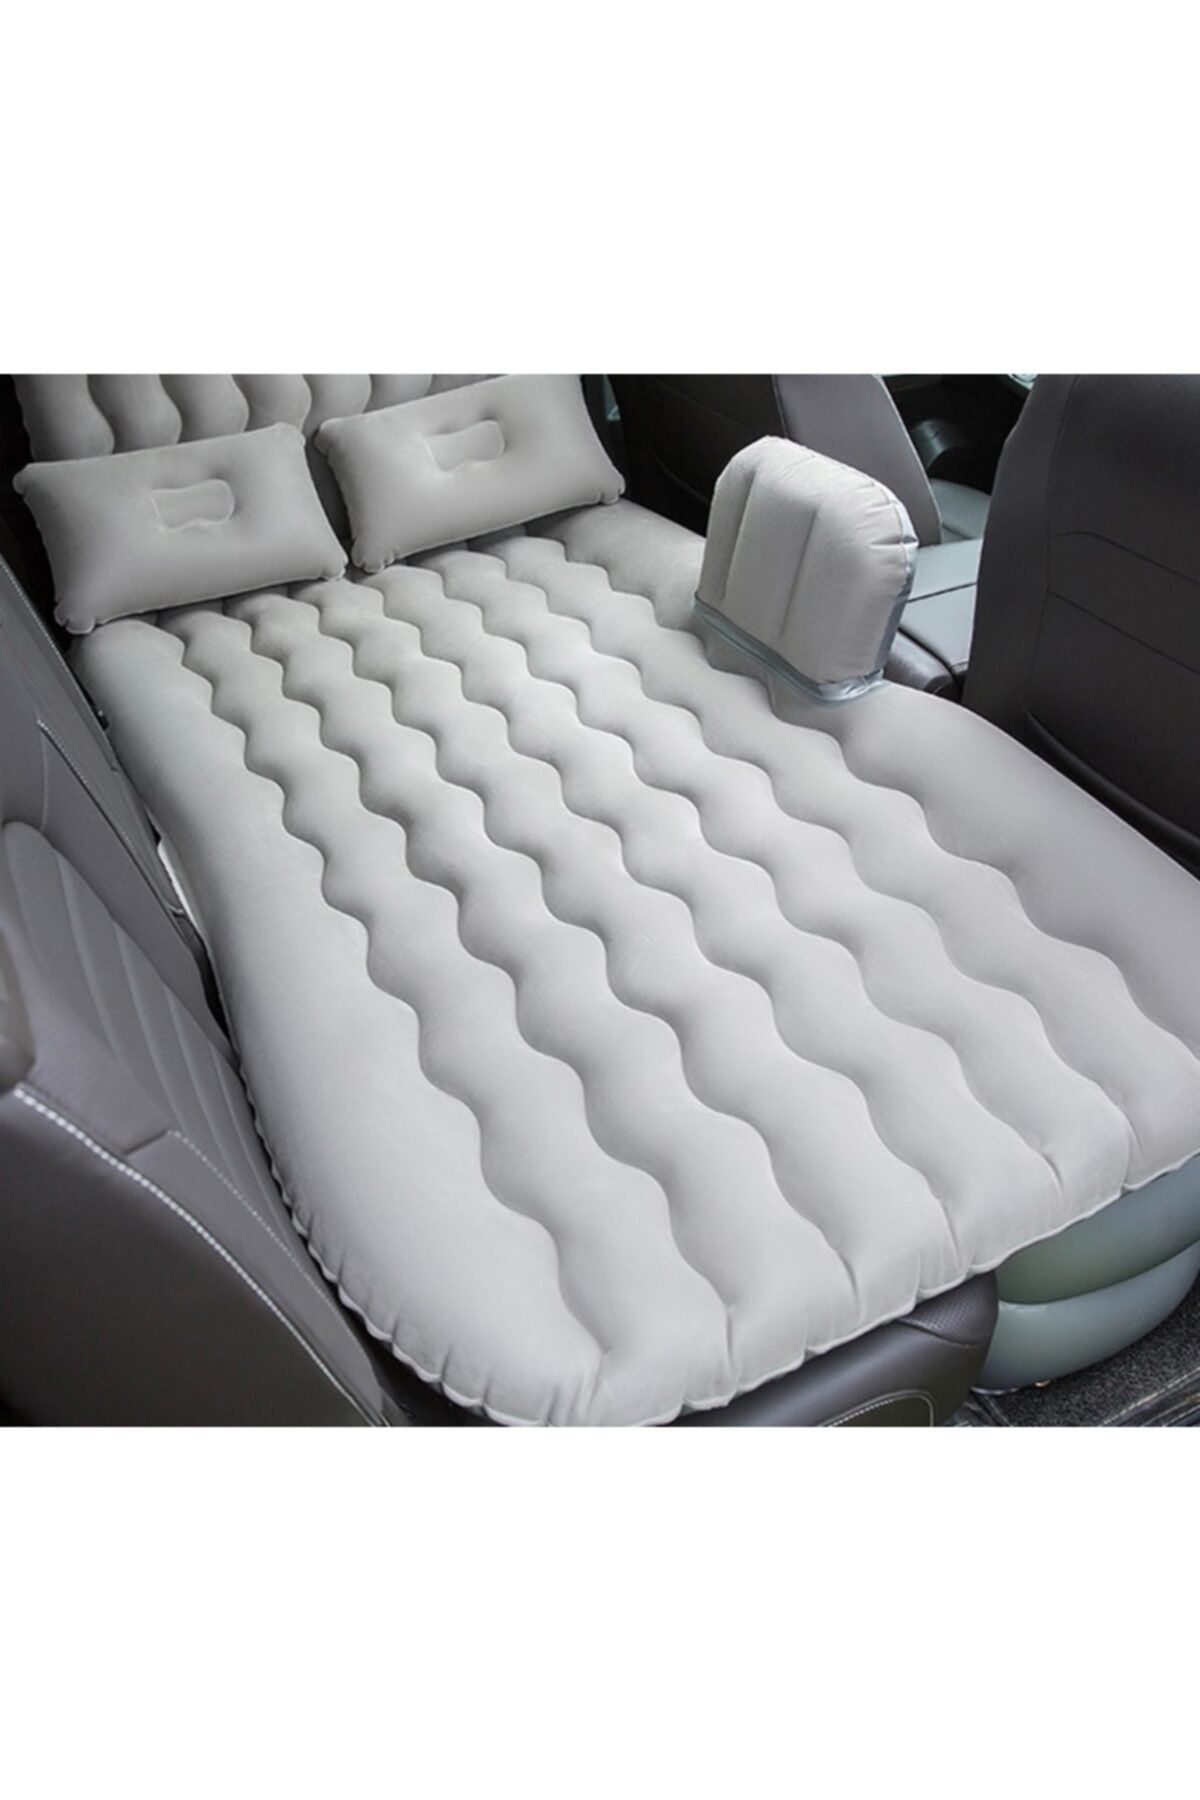 Smartfox Car Bed Araç Içi Şişme Yatak Araba Arka Koltuk Yatağı + Şişirme Pompası